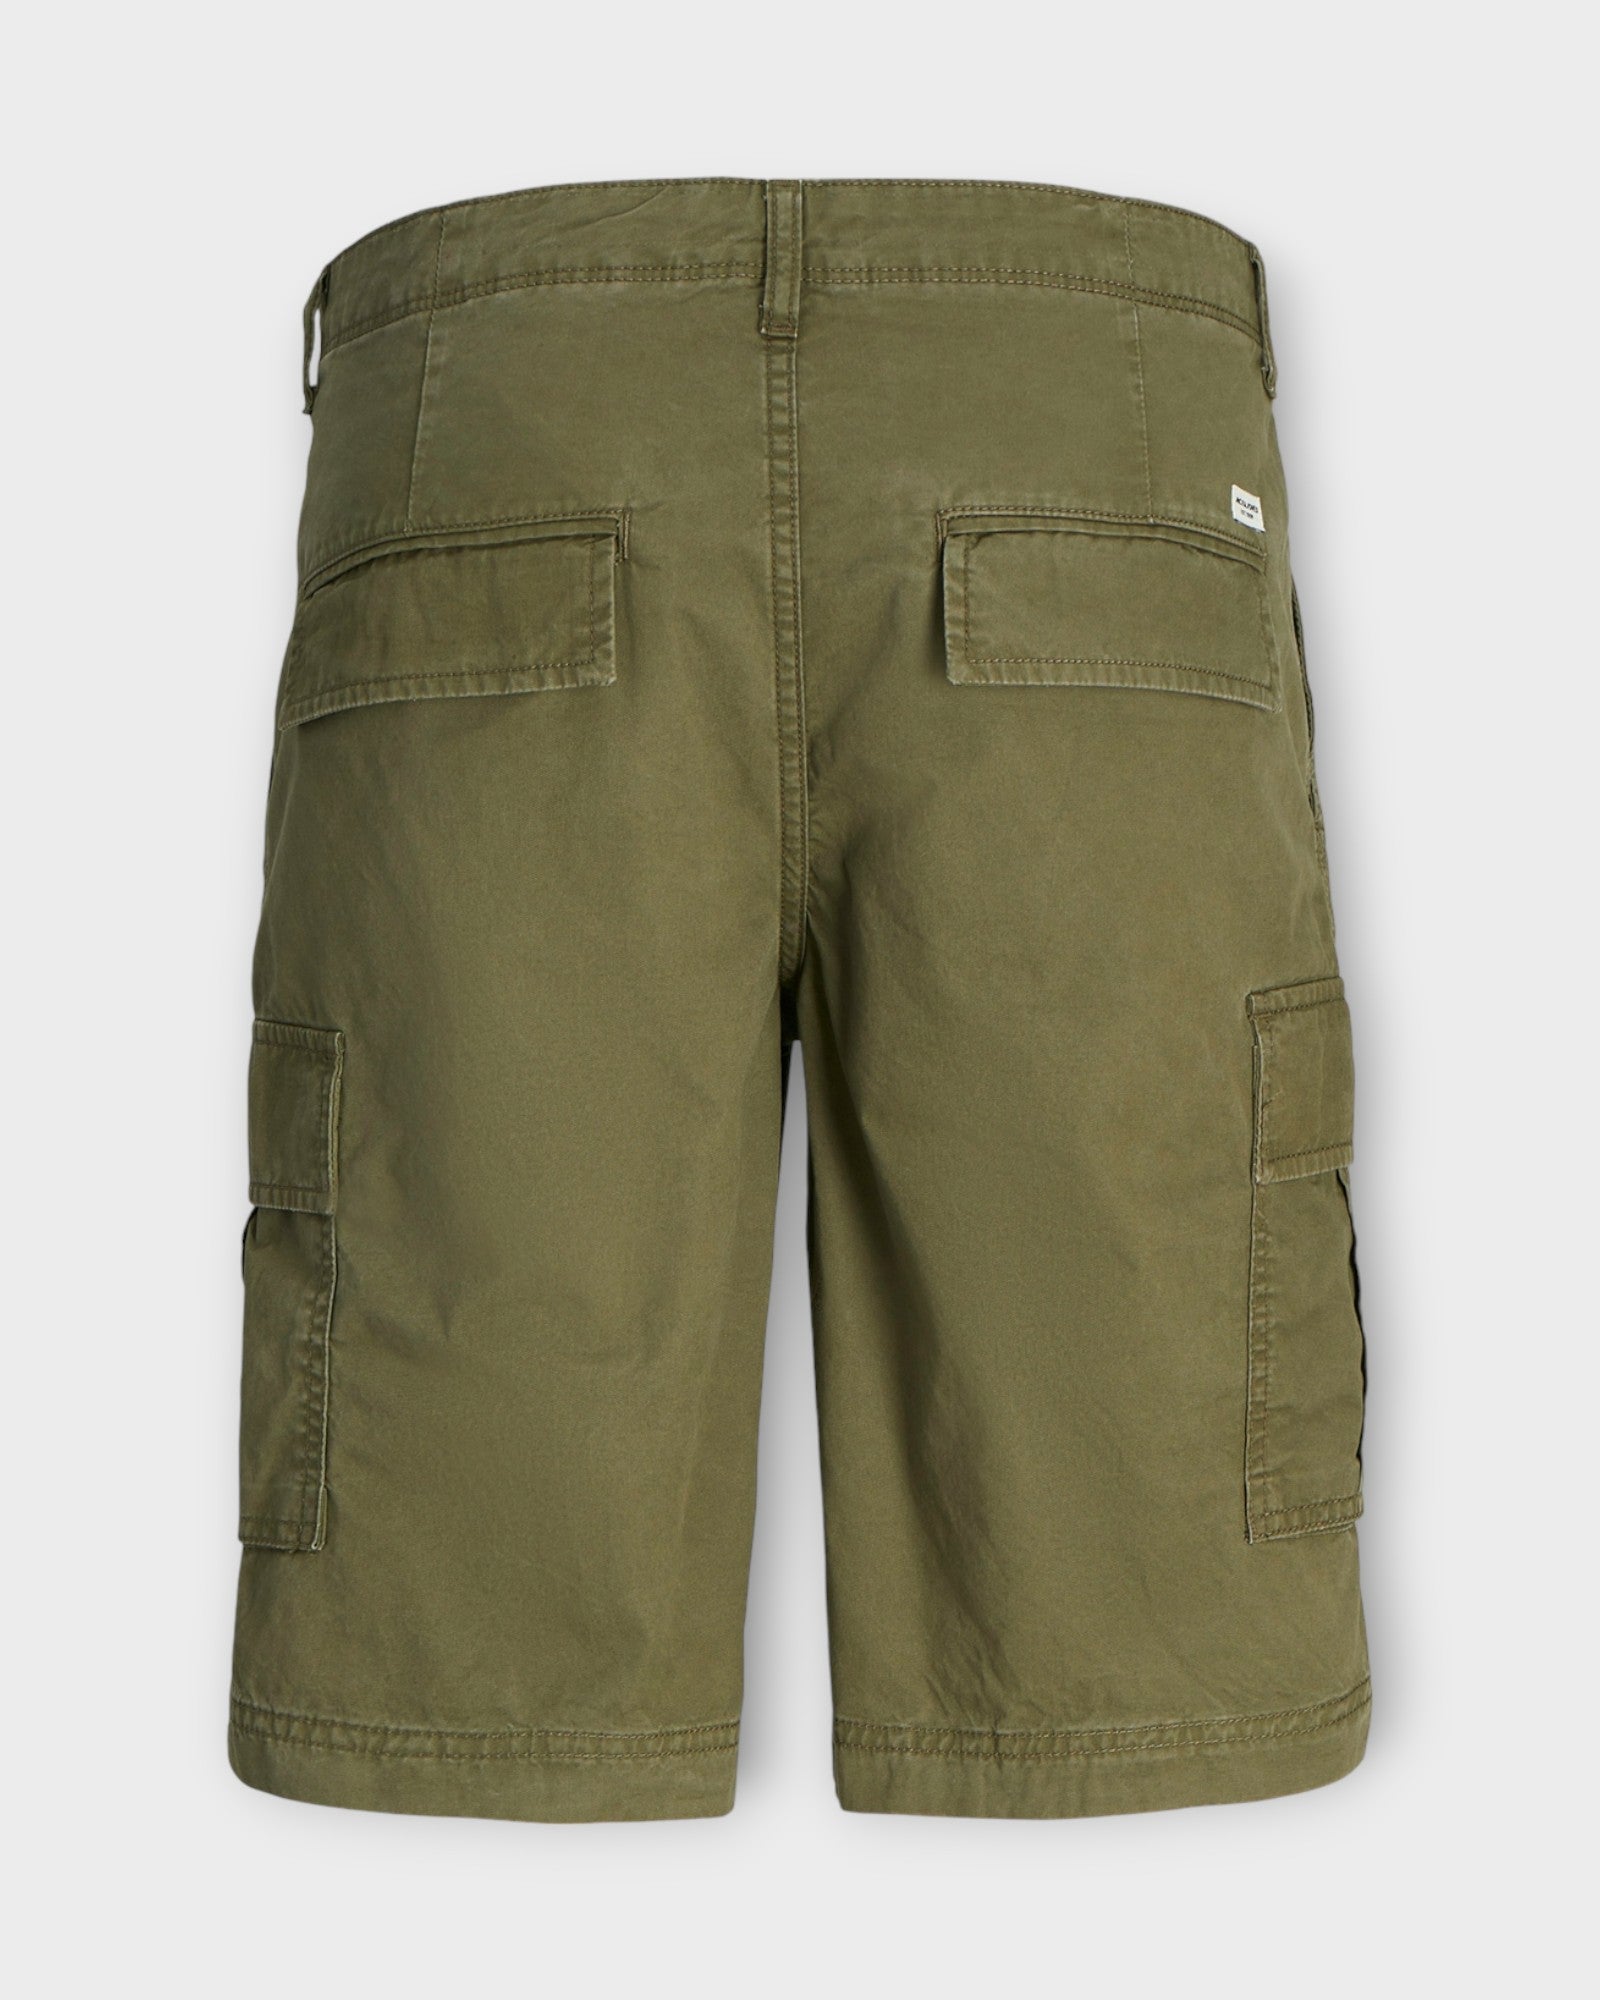 Cole Short Olive Night fra Jack and Jones. Grønne cargo shorts til mænd. Her set bagfra.